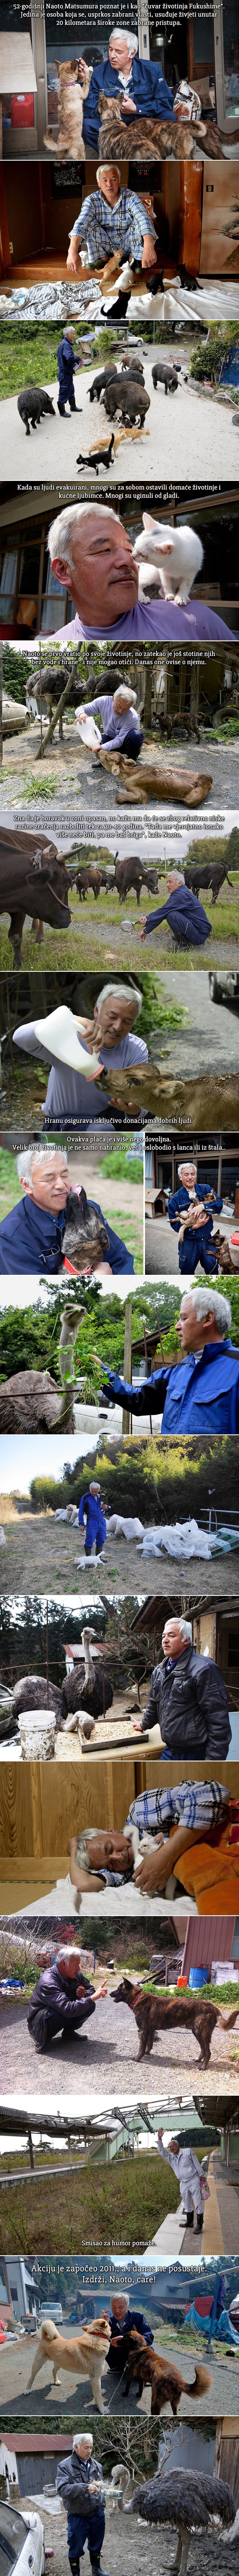 Anđeo iz Fukushime: "Radioaktivni čovjek" posvetio život napuštenim životinjama